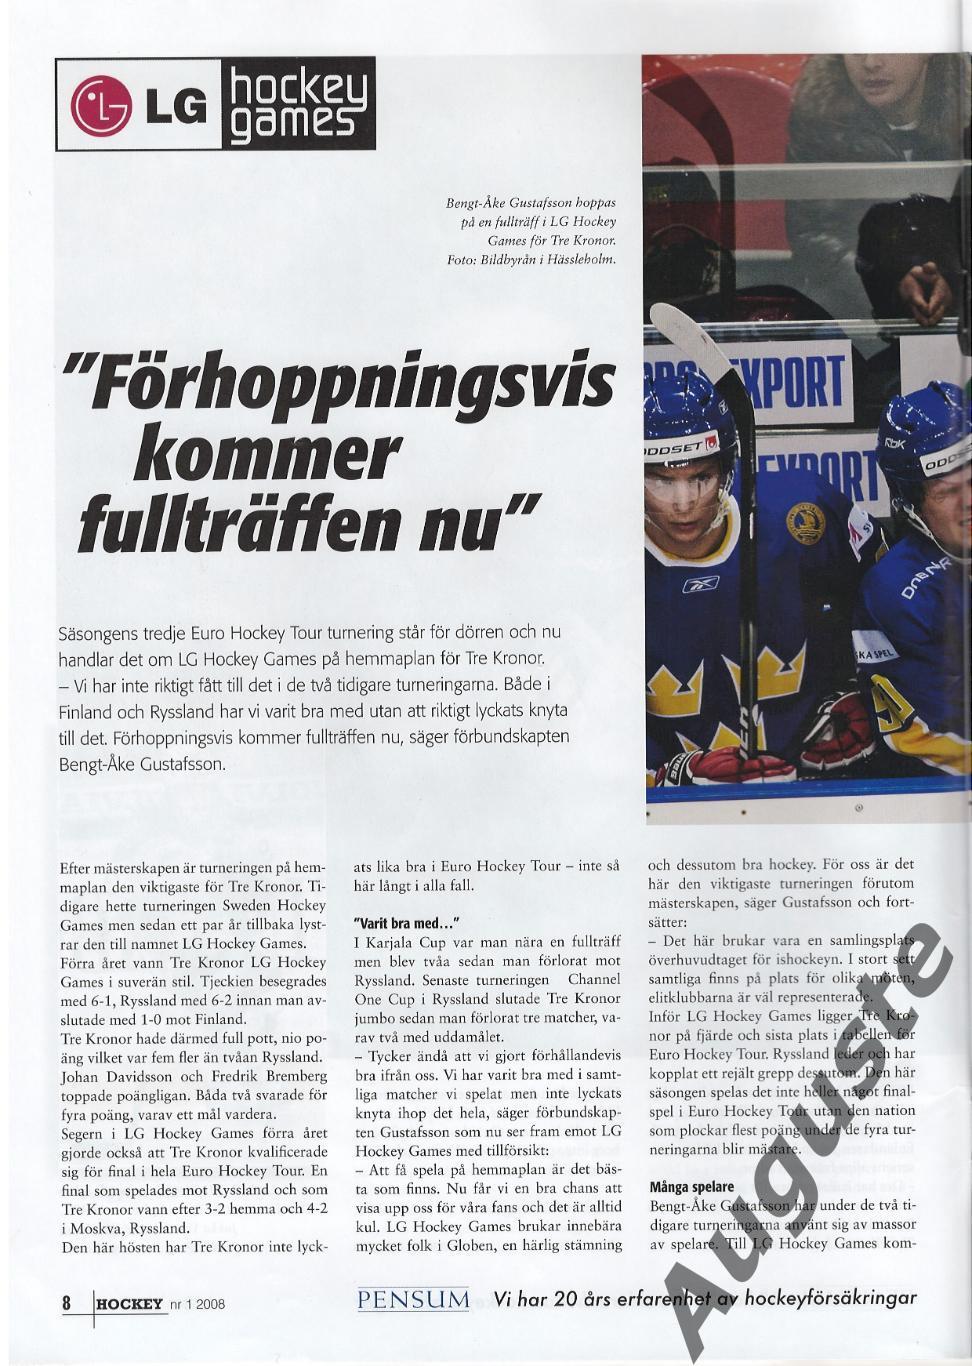 Журнал ХОККЕЙ № 1 - 2008. Швеция. Материалы к Шведским хоккейным играм. 2